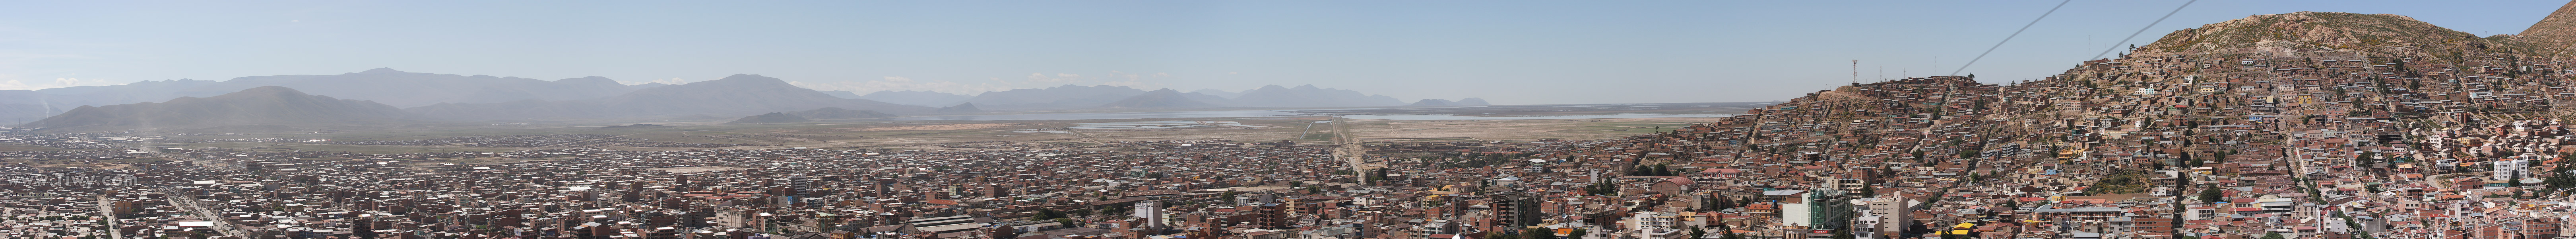 El panorama de Oruro de piedra